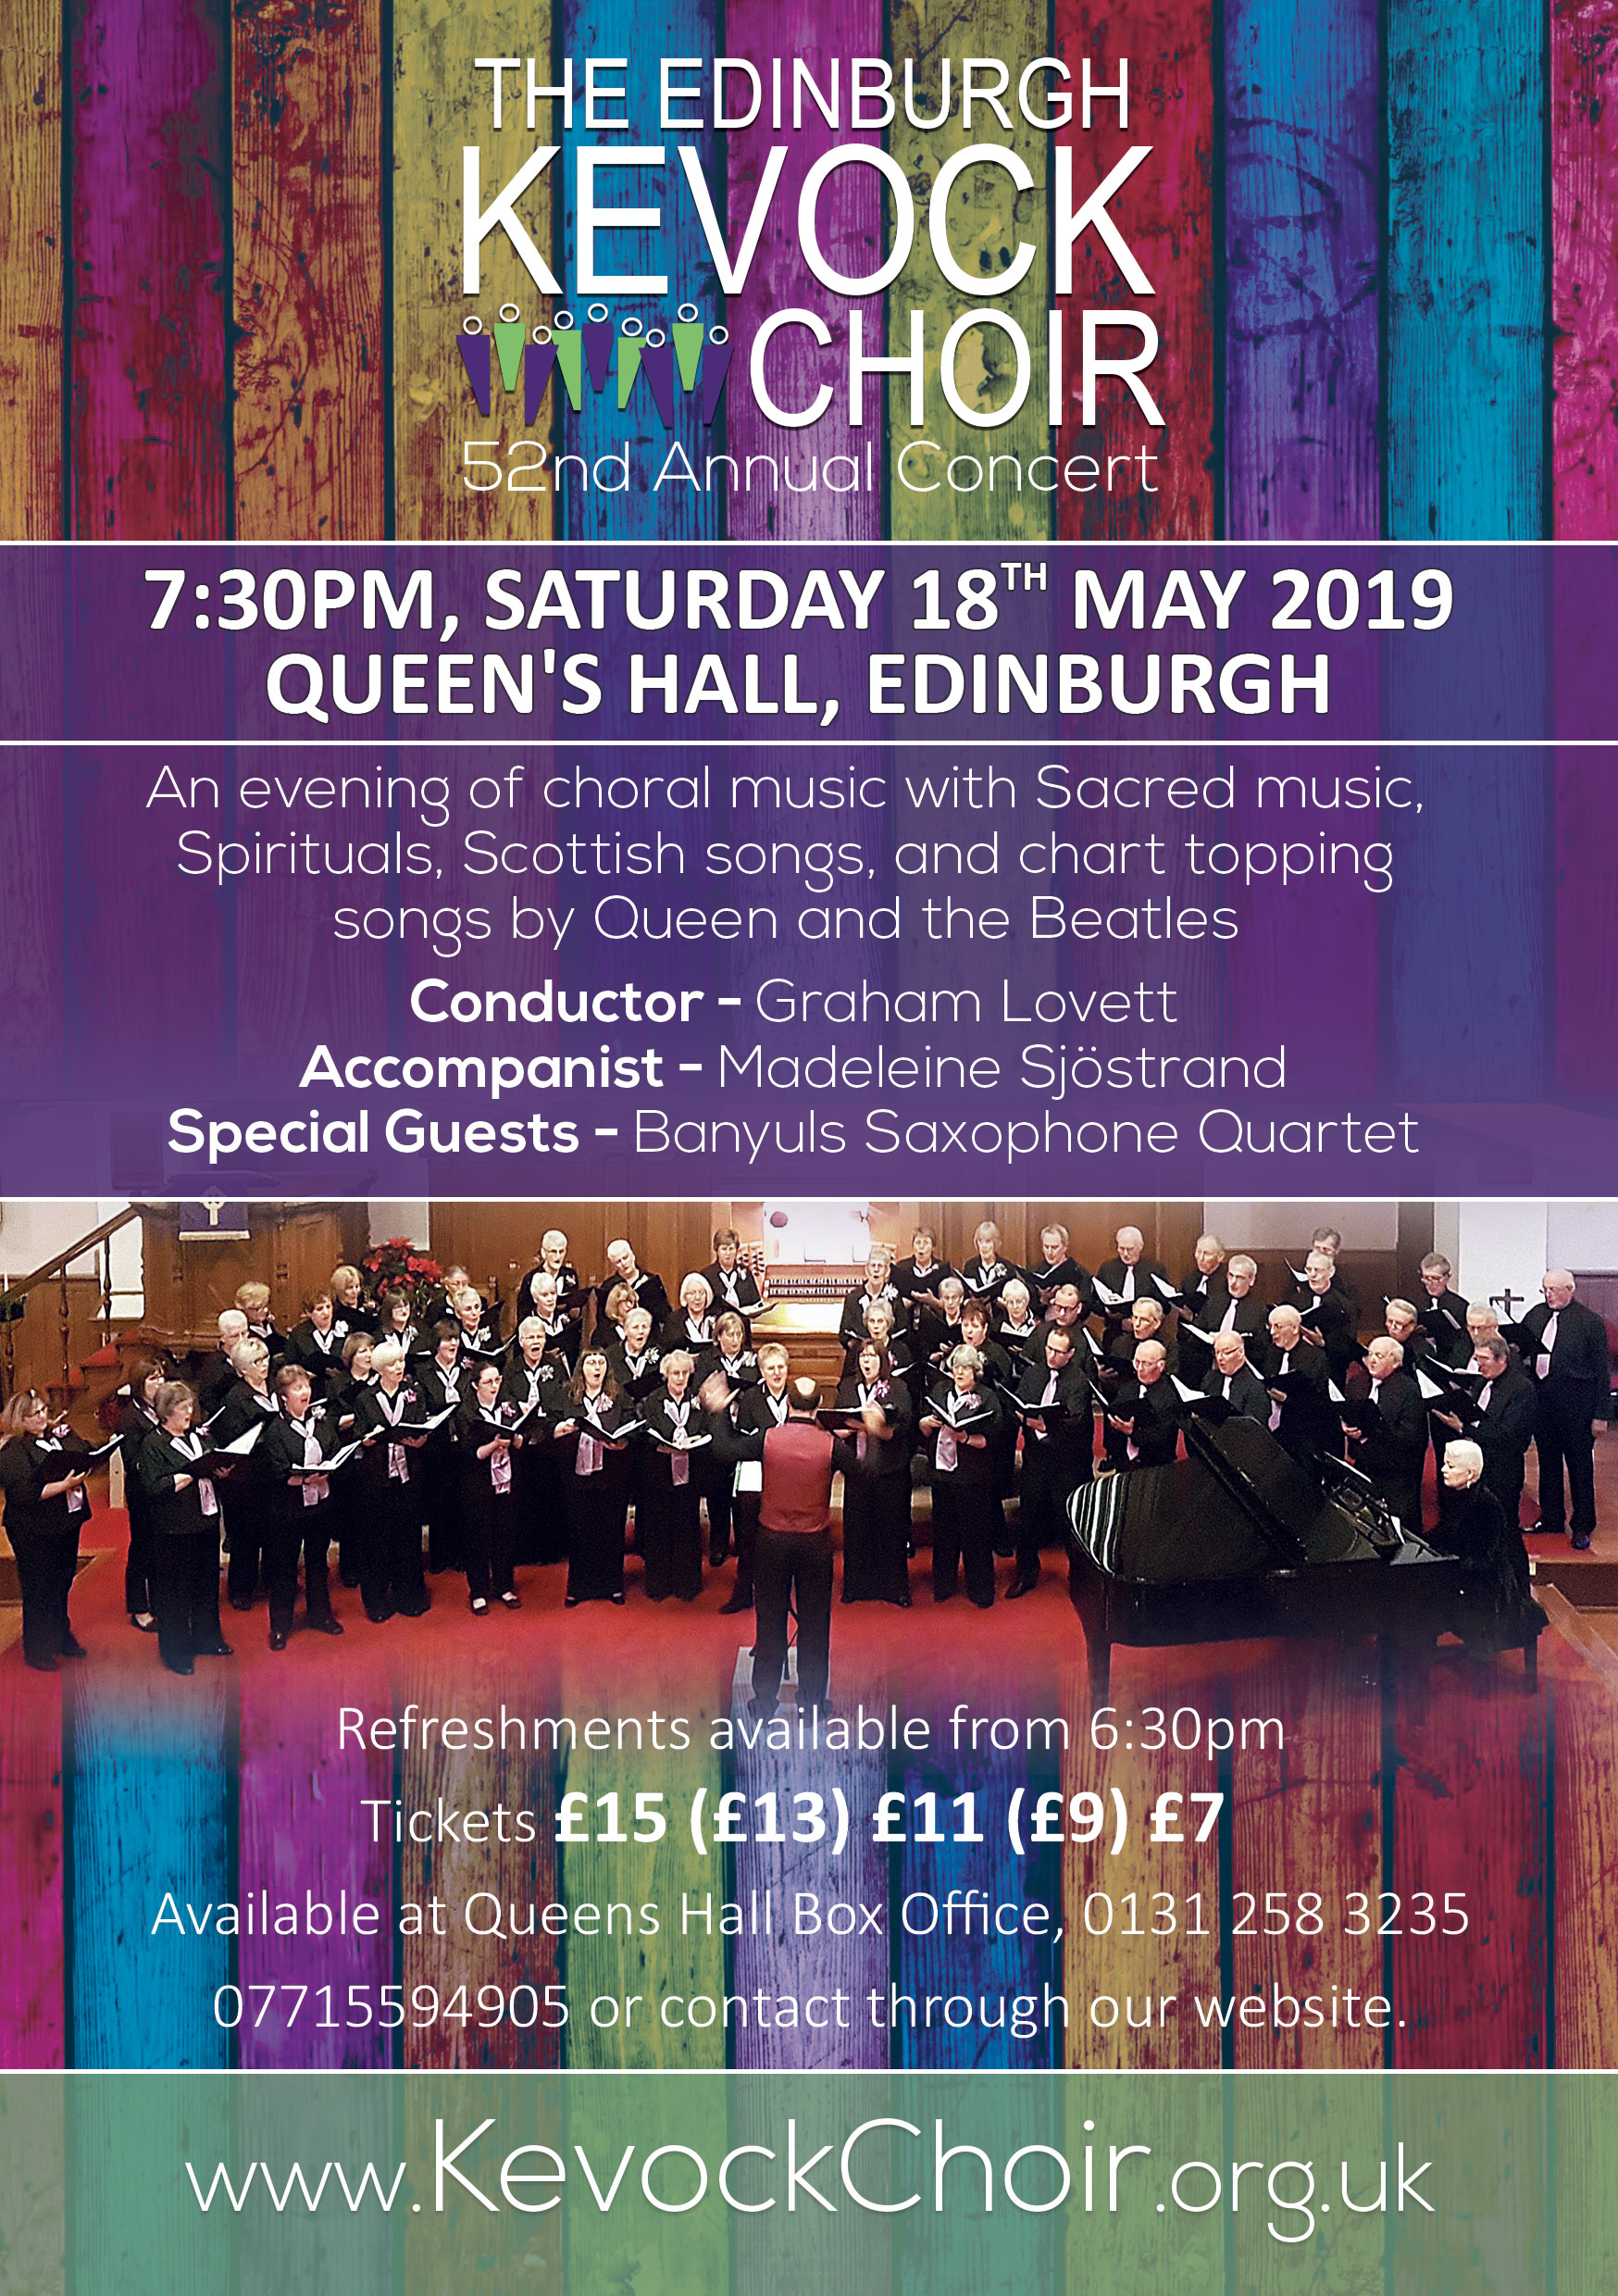 Saturday, 18th May 2019 | The Edinburgh Kevock Choir